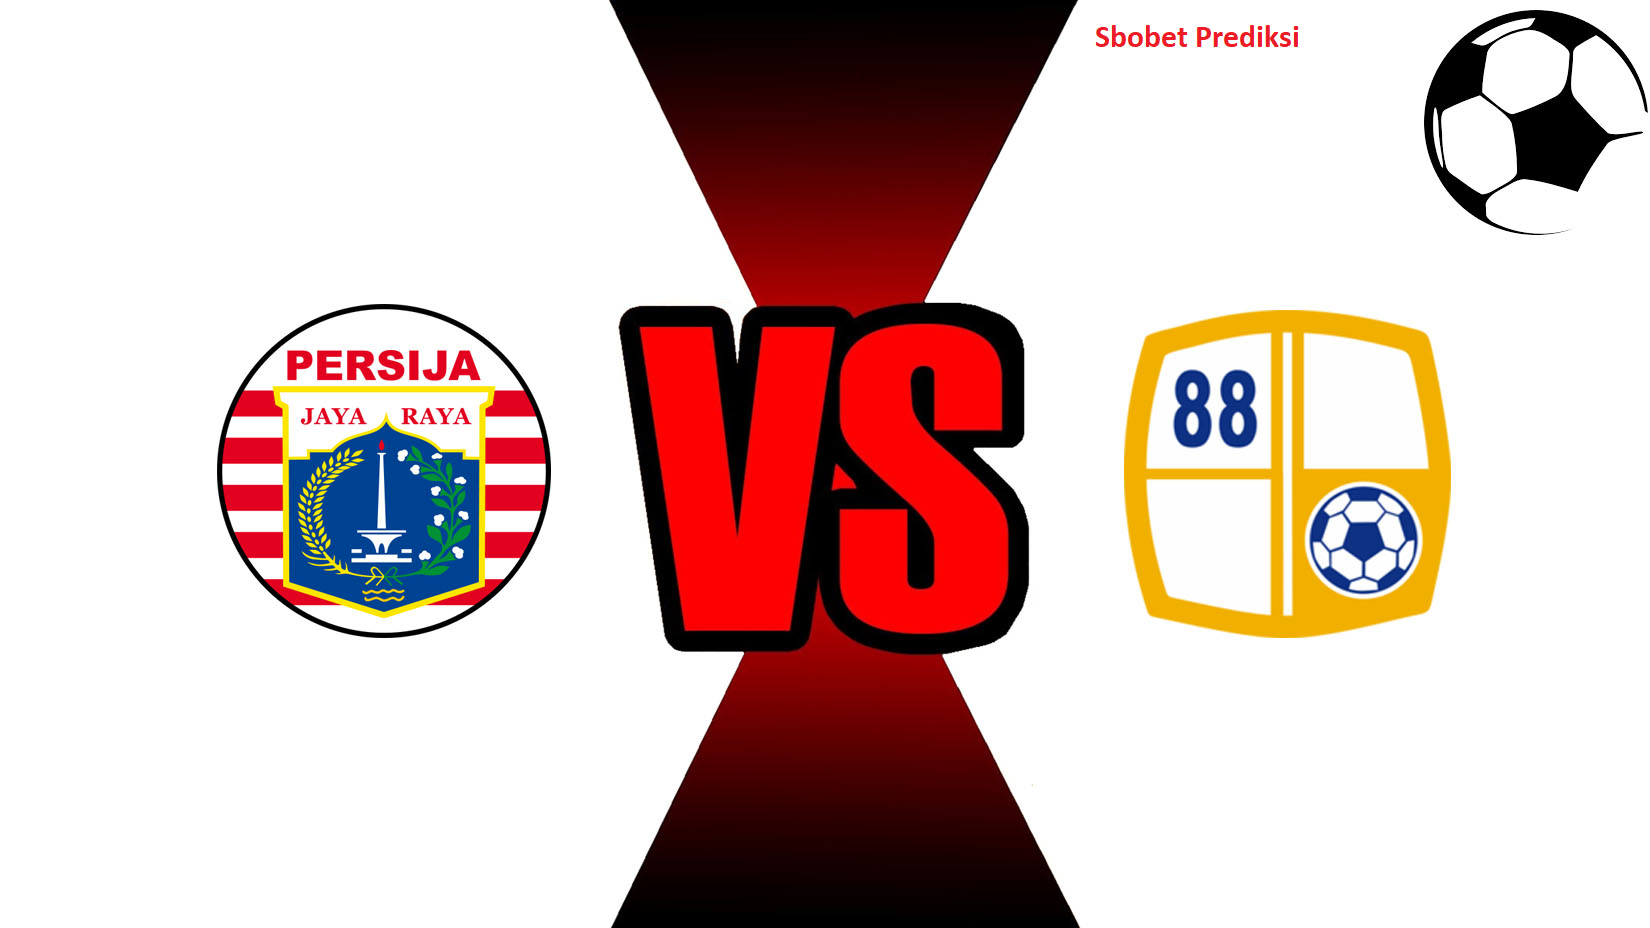 Prediksi Skor Bola Online Persija Jakarta vs PS Barito Putera 30 Oktober 2018